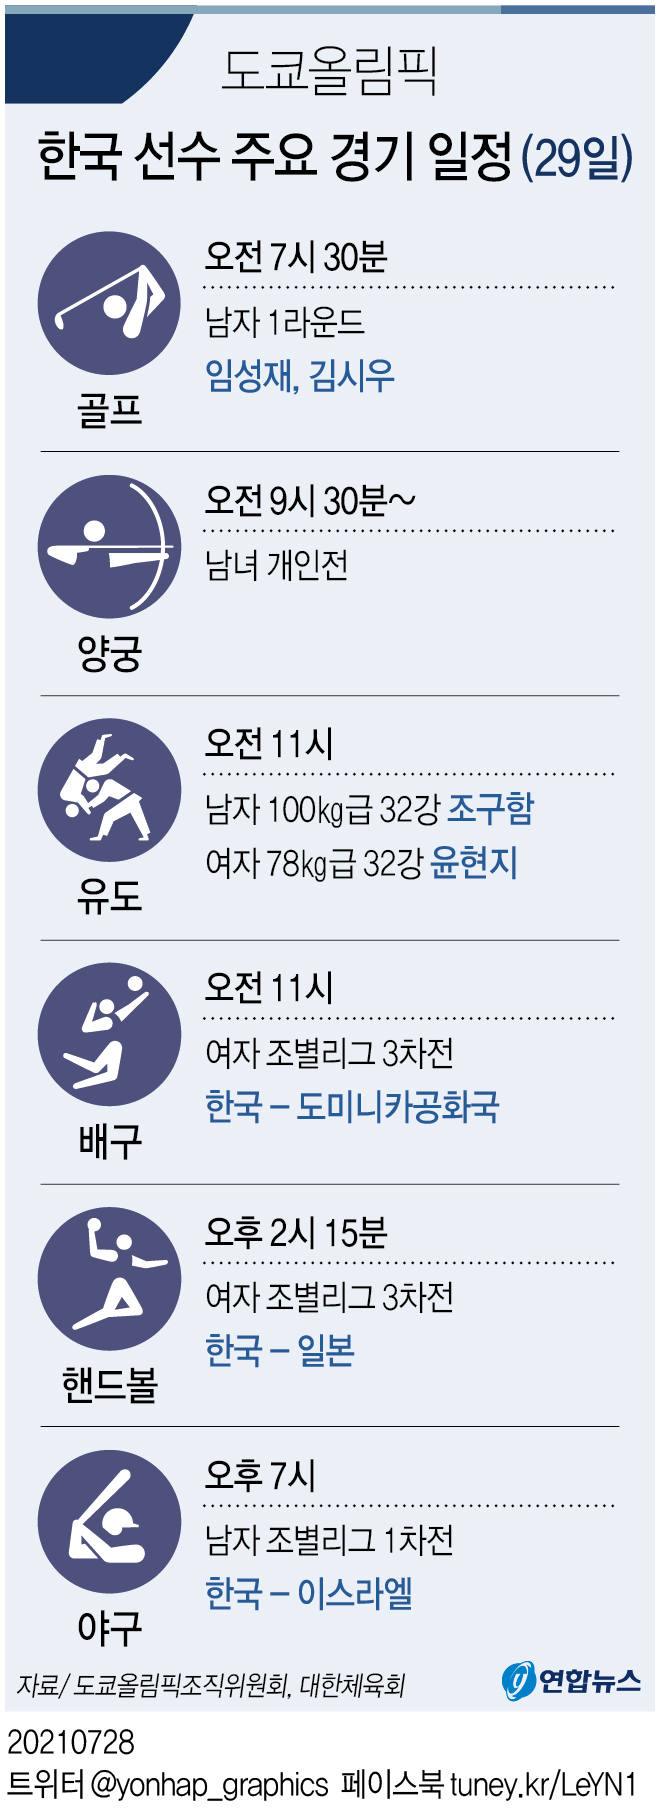 [그래픽] 도쿄올림픽 한국 선수 주요 경기 일정(29일)